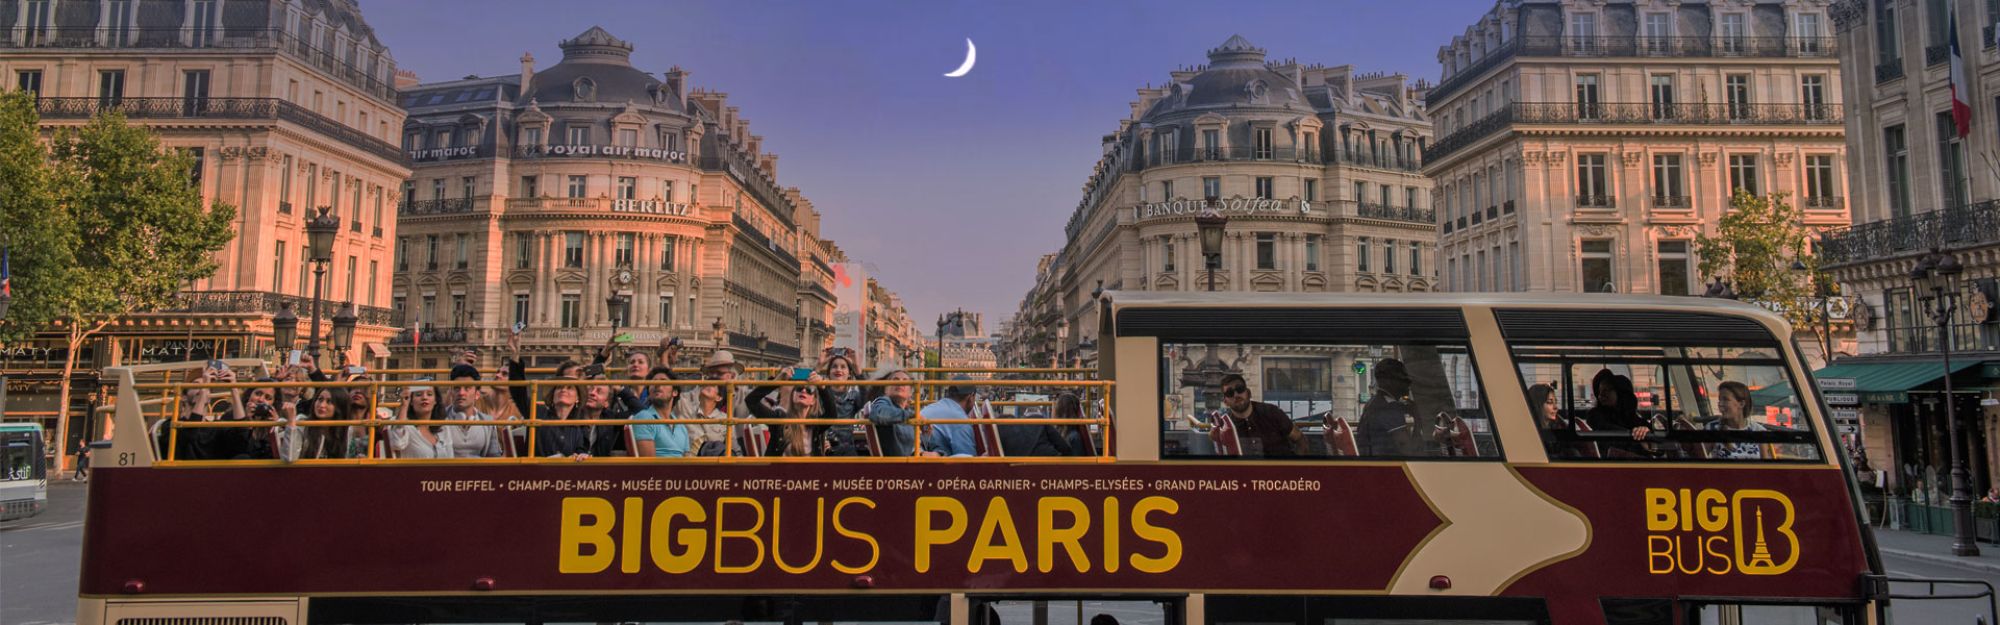 big bus tours paris tours